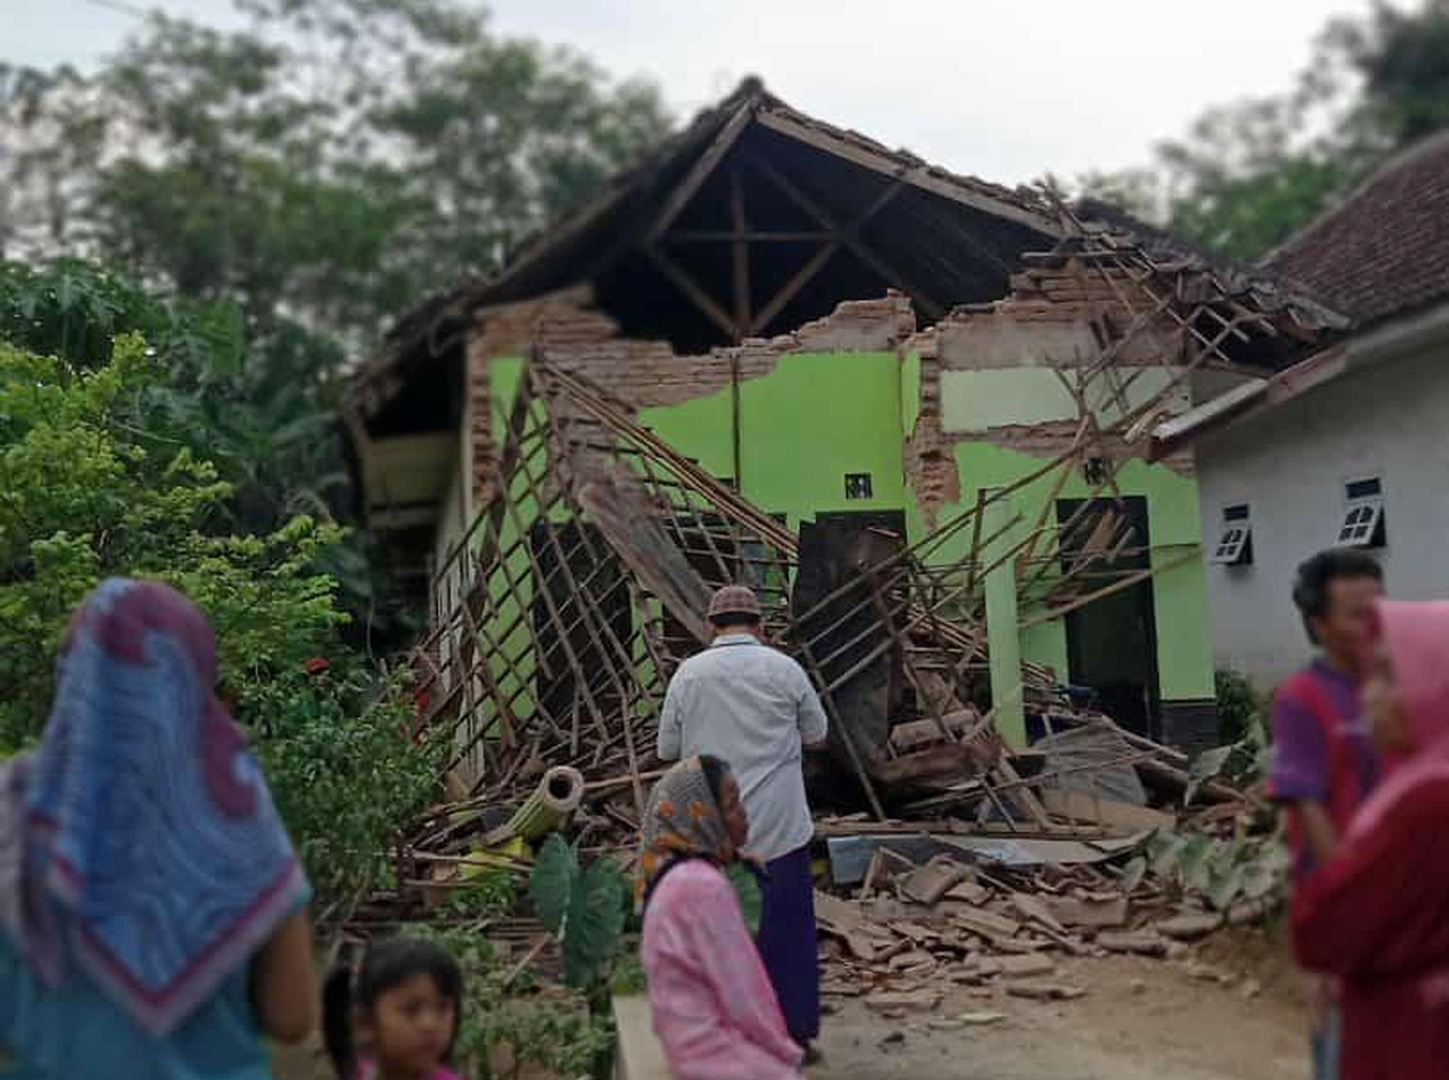 الرئيس الإندونيسي يأمر بتسريع عمليات الإنقاذ عقب الزلزال المدمر